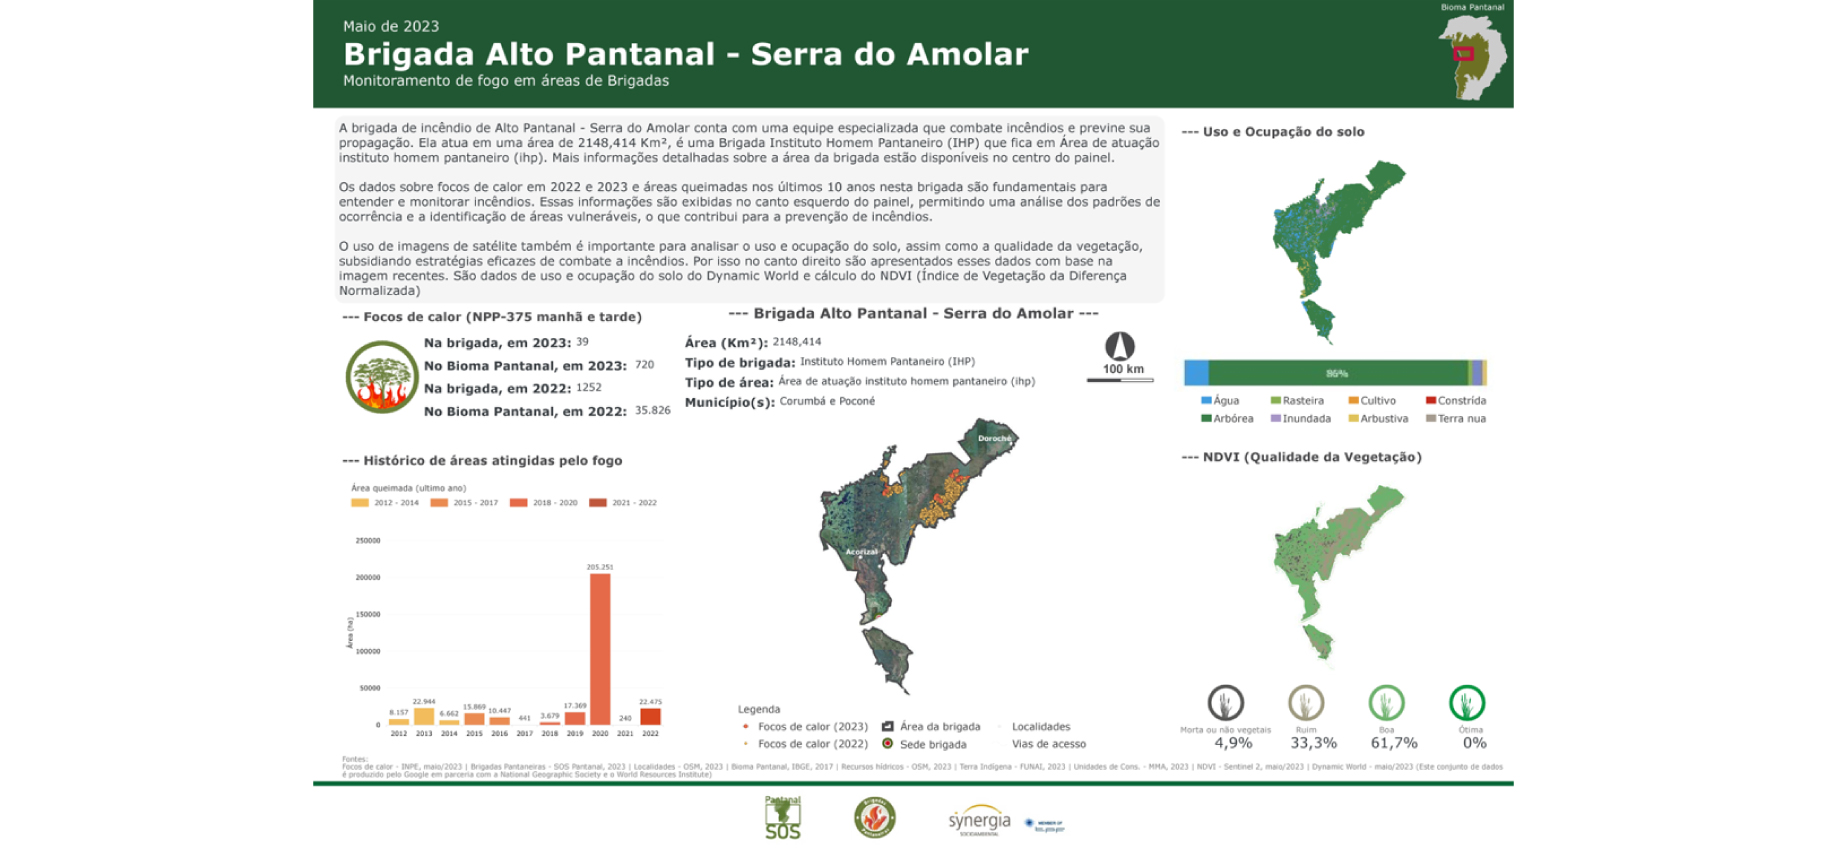 Painel Aracuã: monitoramento de focos de calor no Pantanal